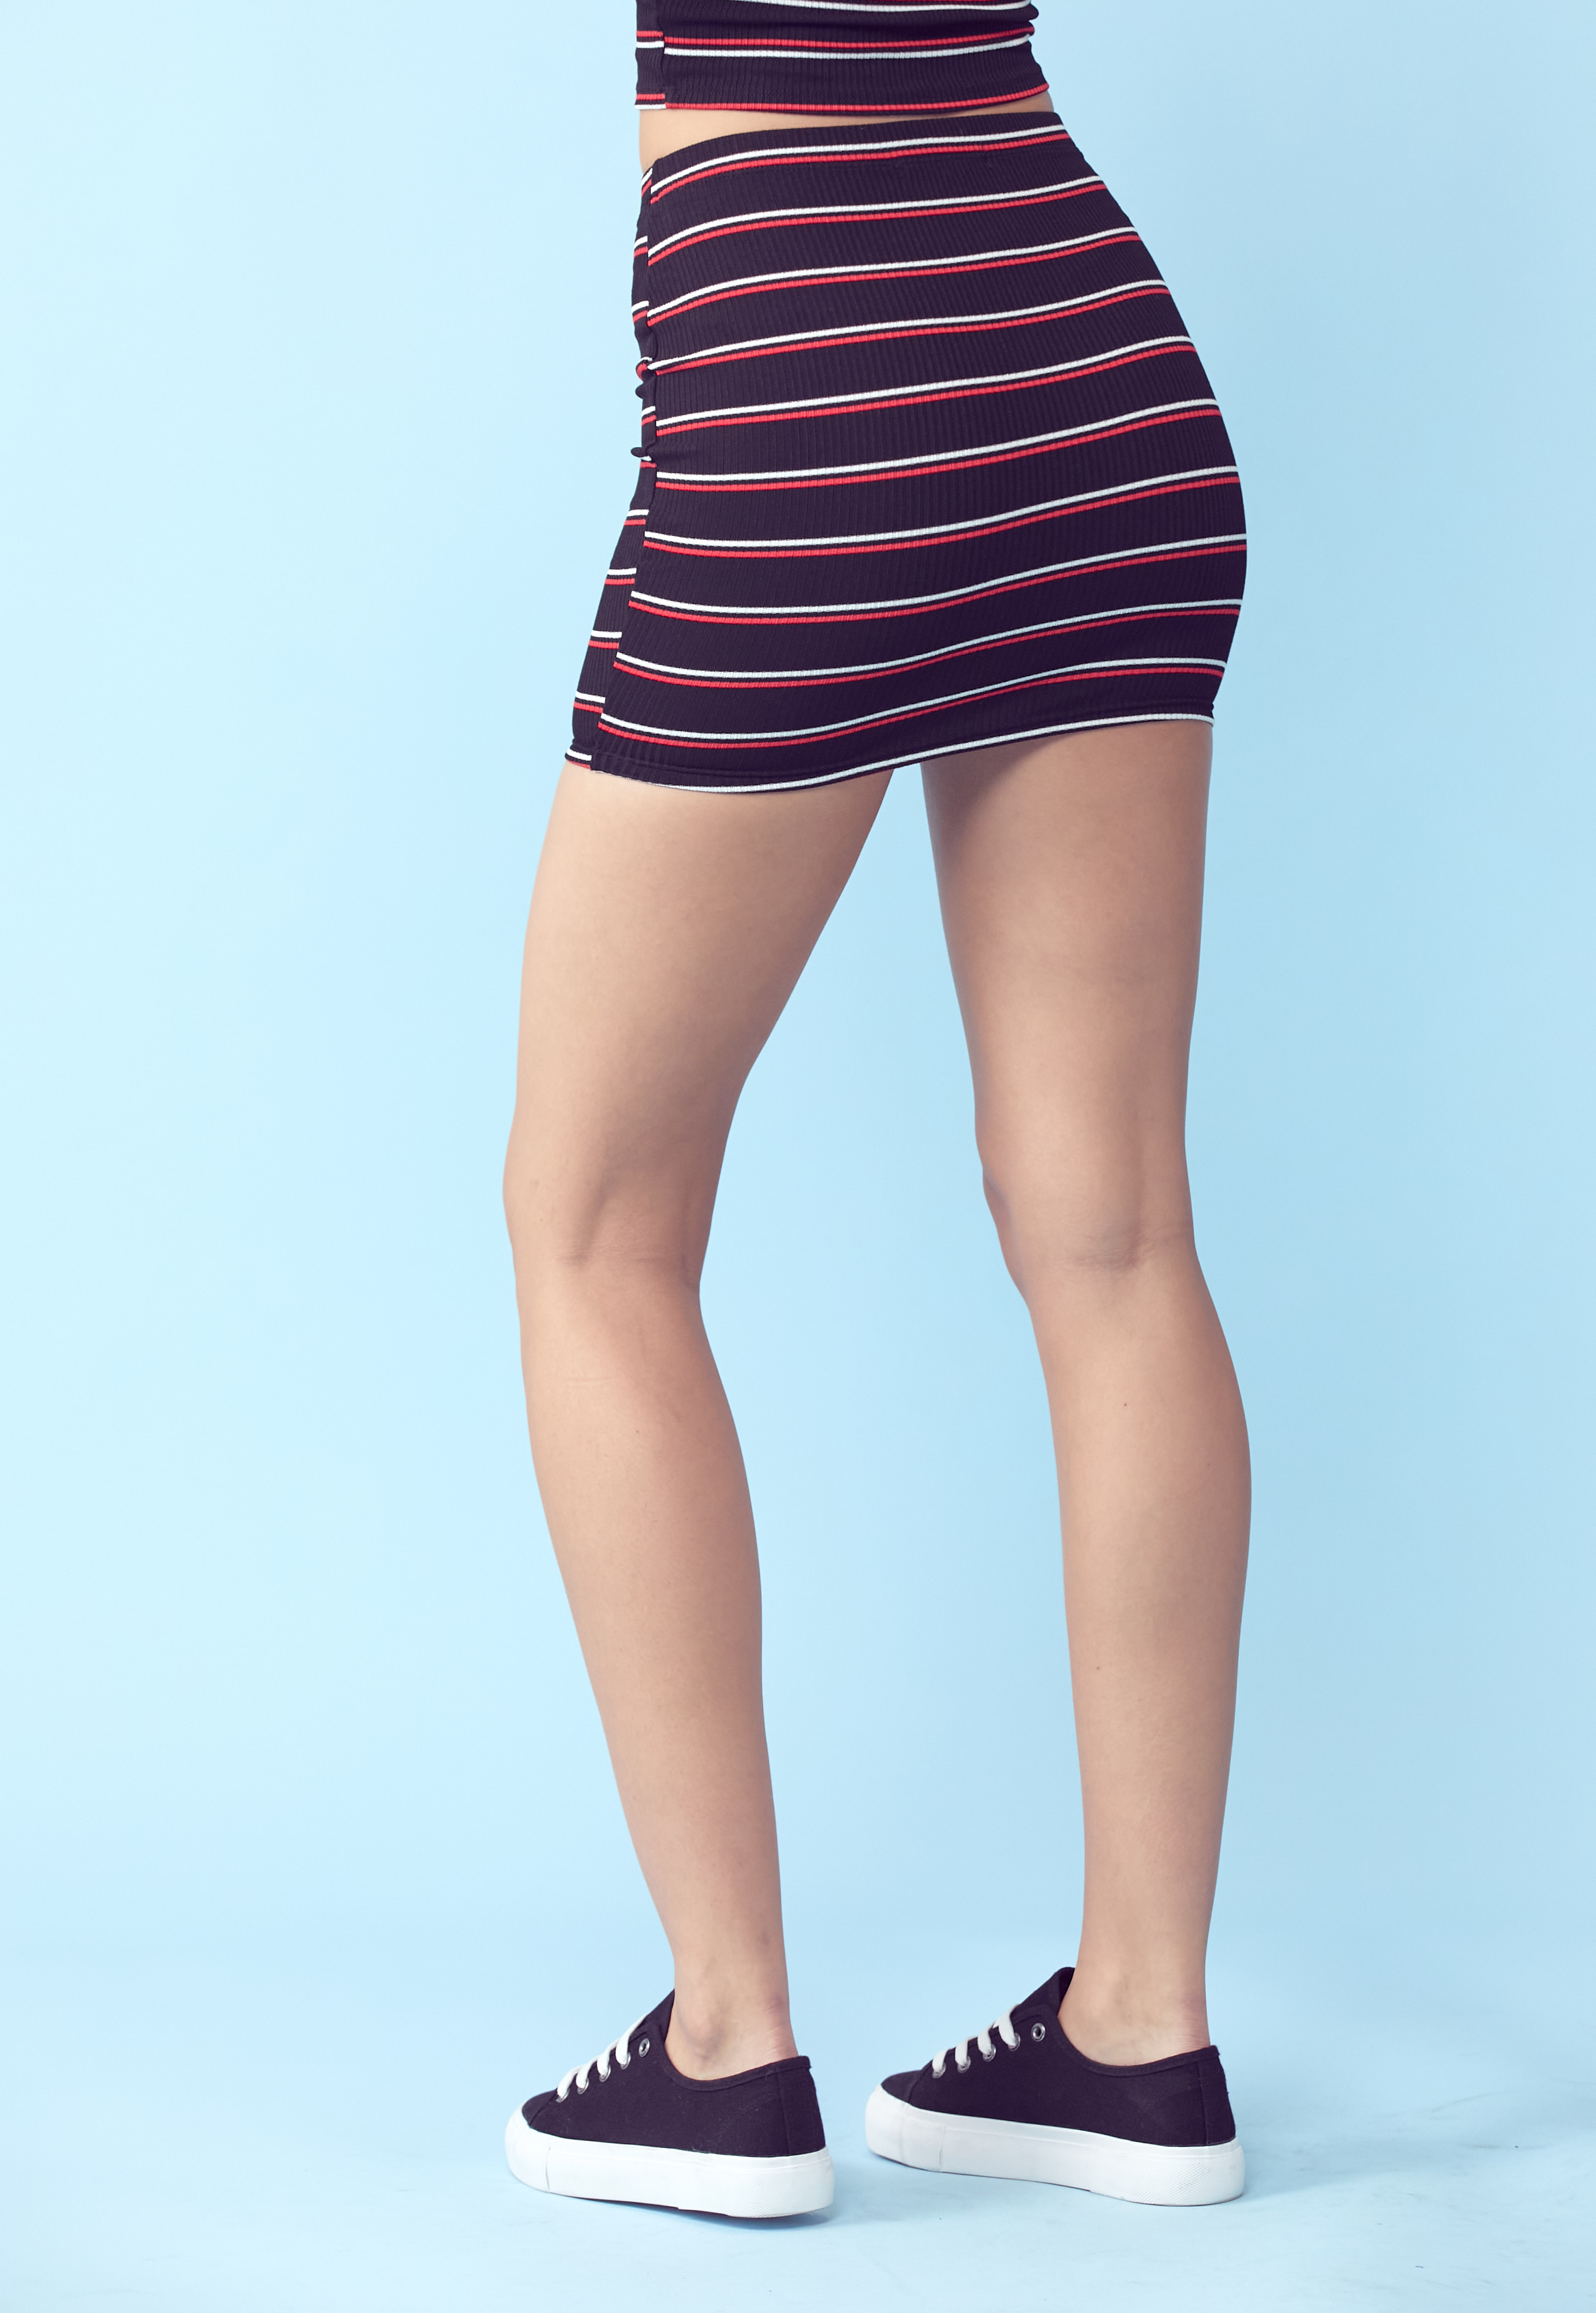 Striped Knit Mini Skirt